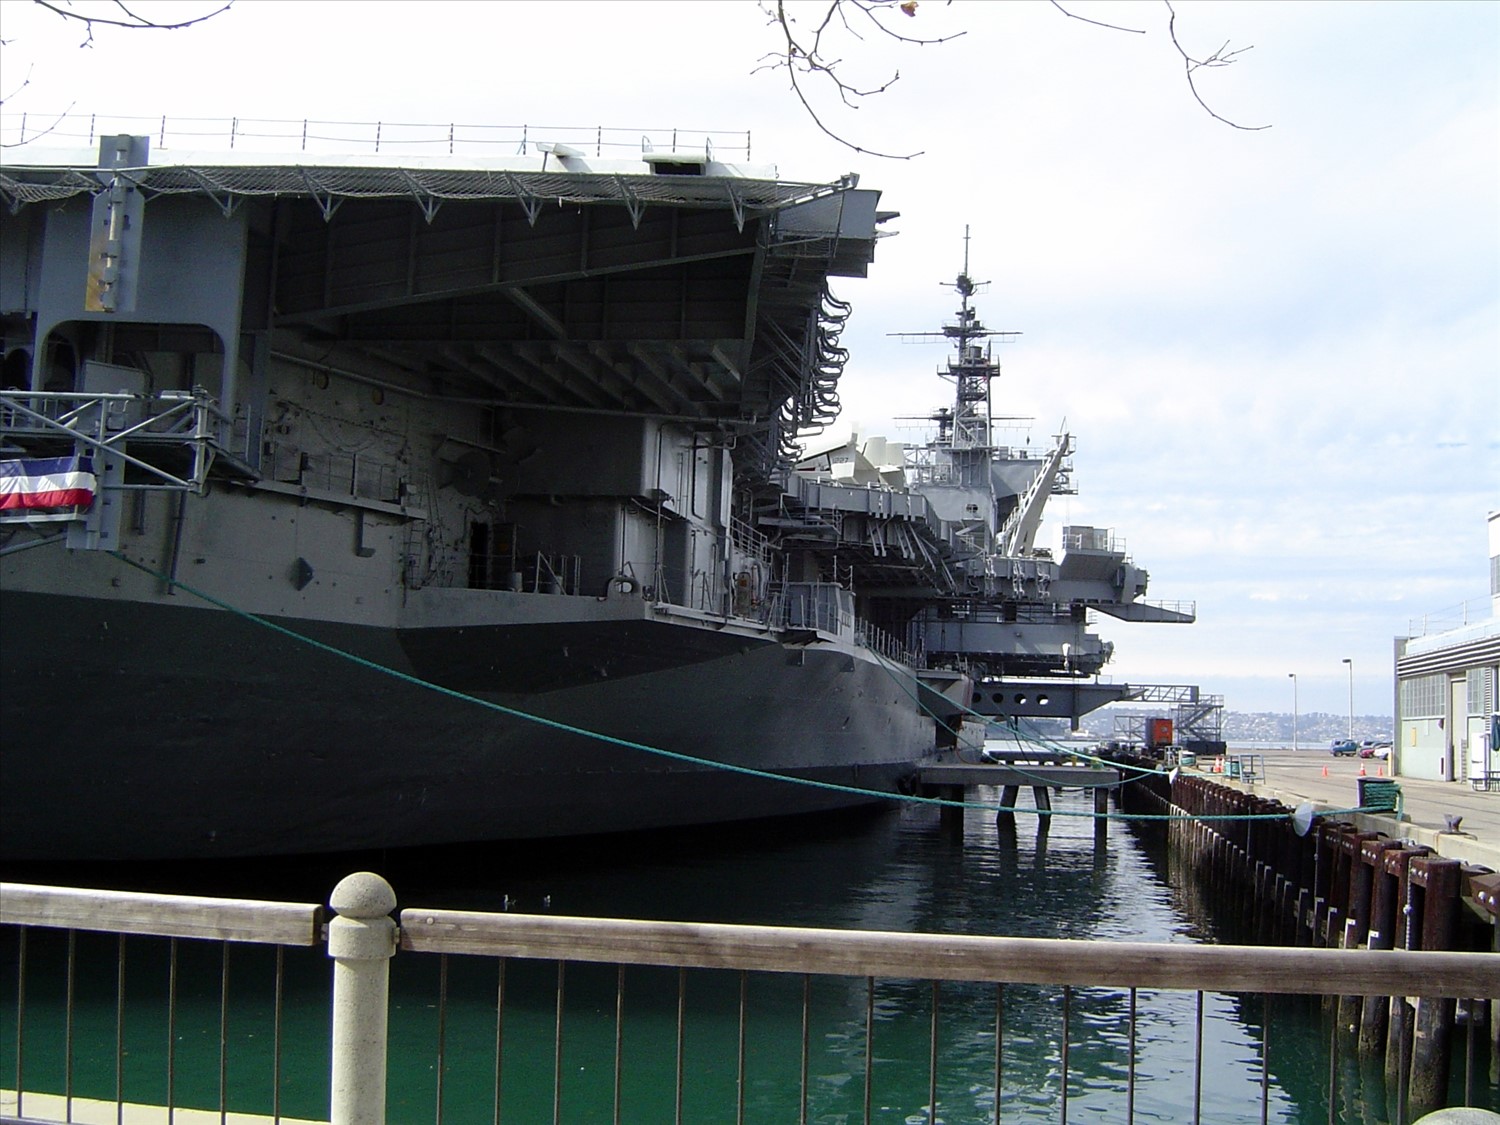 Closer view of an aircraft carrier. DSC00547.jpg. Uploaded by Erik Hoffmann on 2/24/2004. 